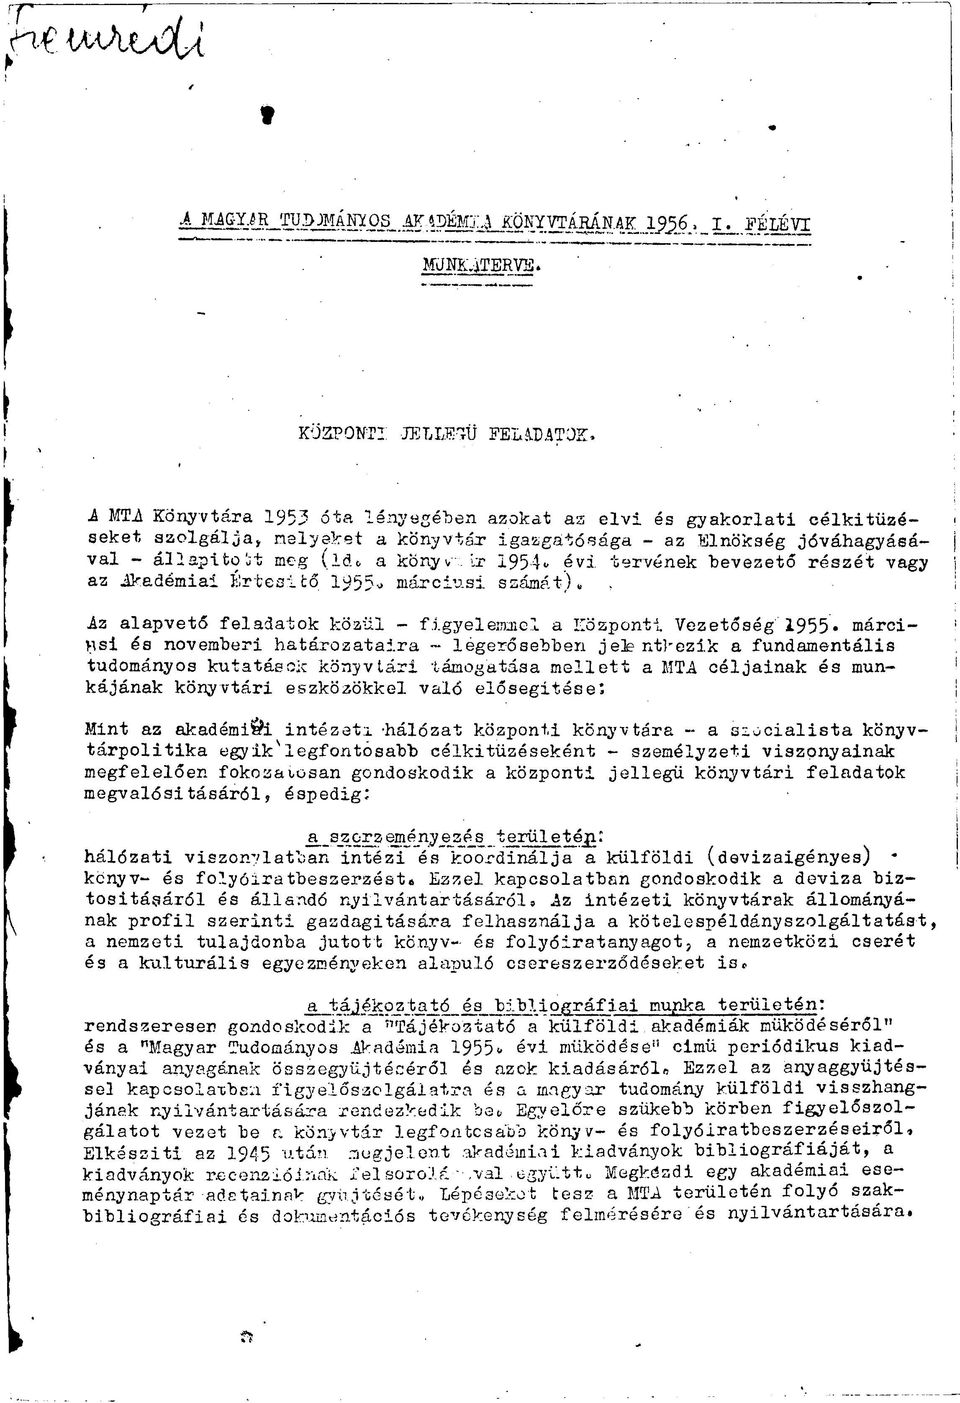 tervének bevezető részét vagy az Akadémiai Értesítő 1955- márciusi számát). Az alapvető feladatok közül - figyelemmel a Központi Vezetőség 1955.